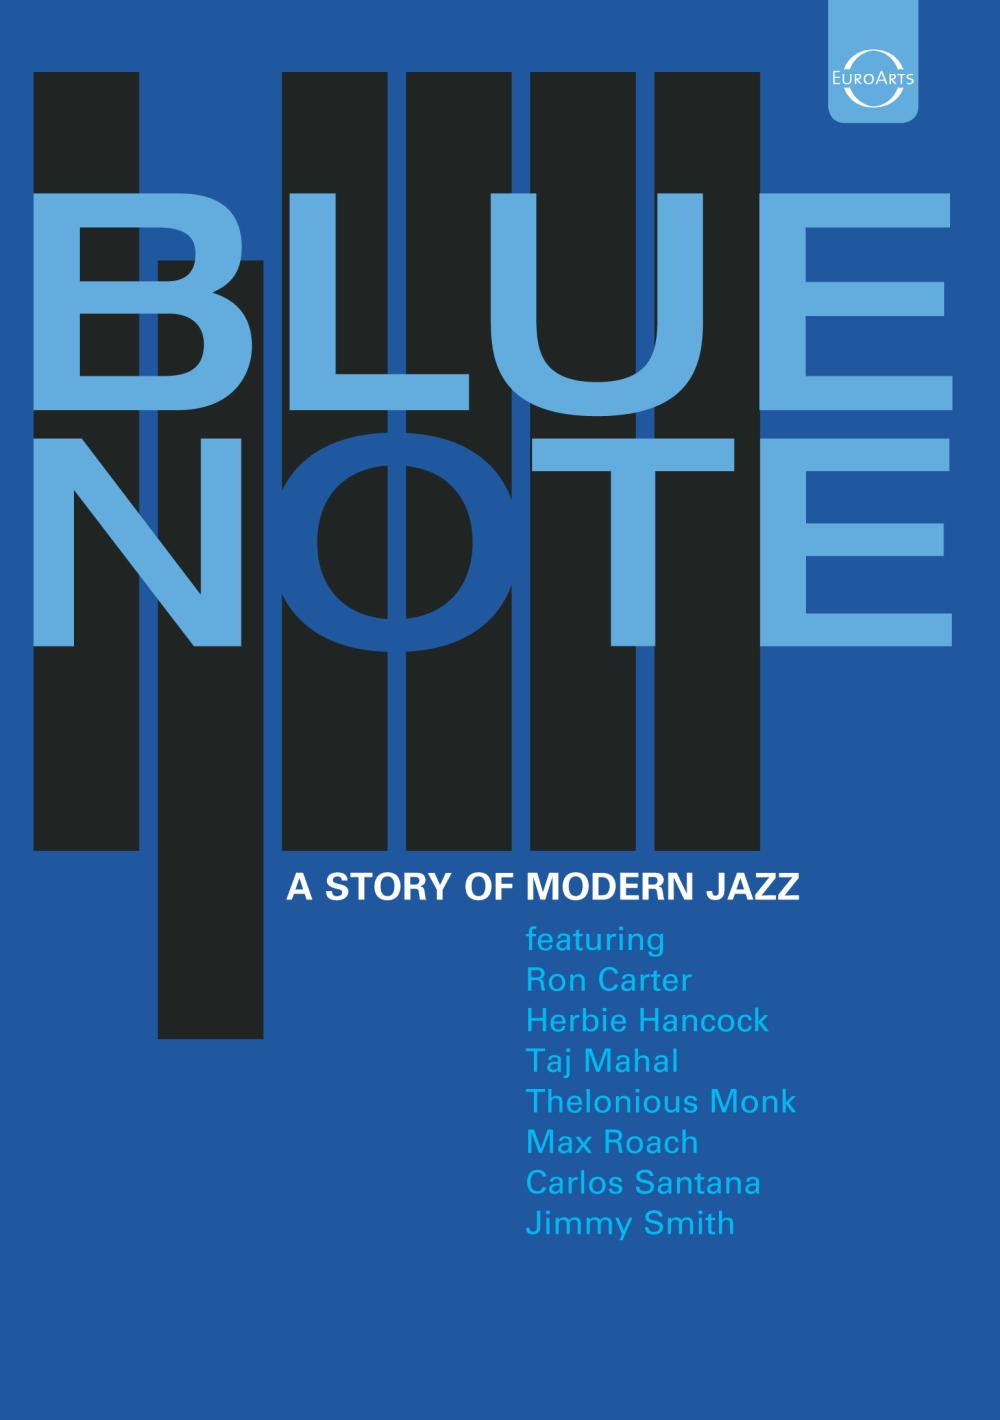 BLUE NOTE - A Story of Modern Jazz - EUROARTS